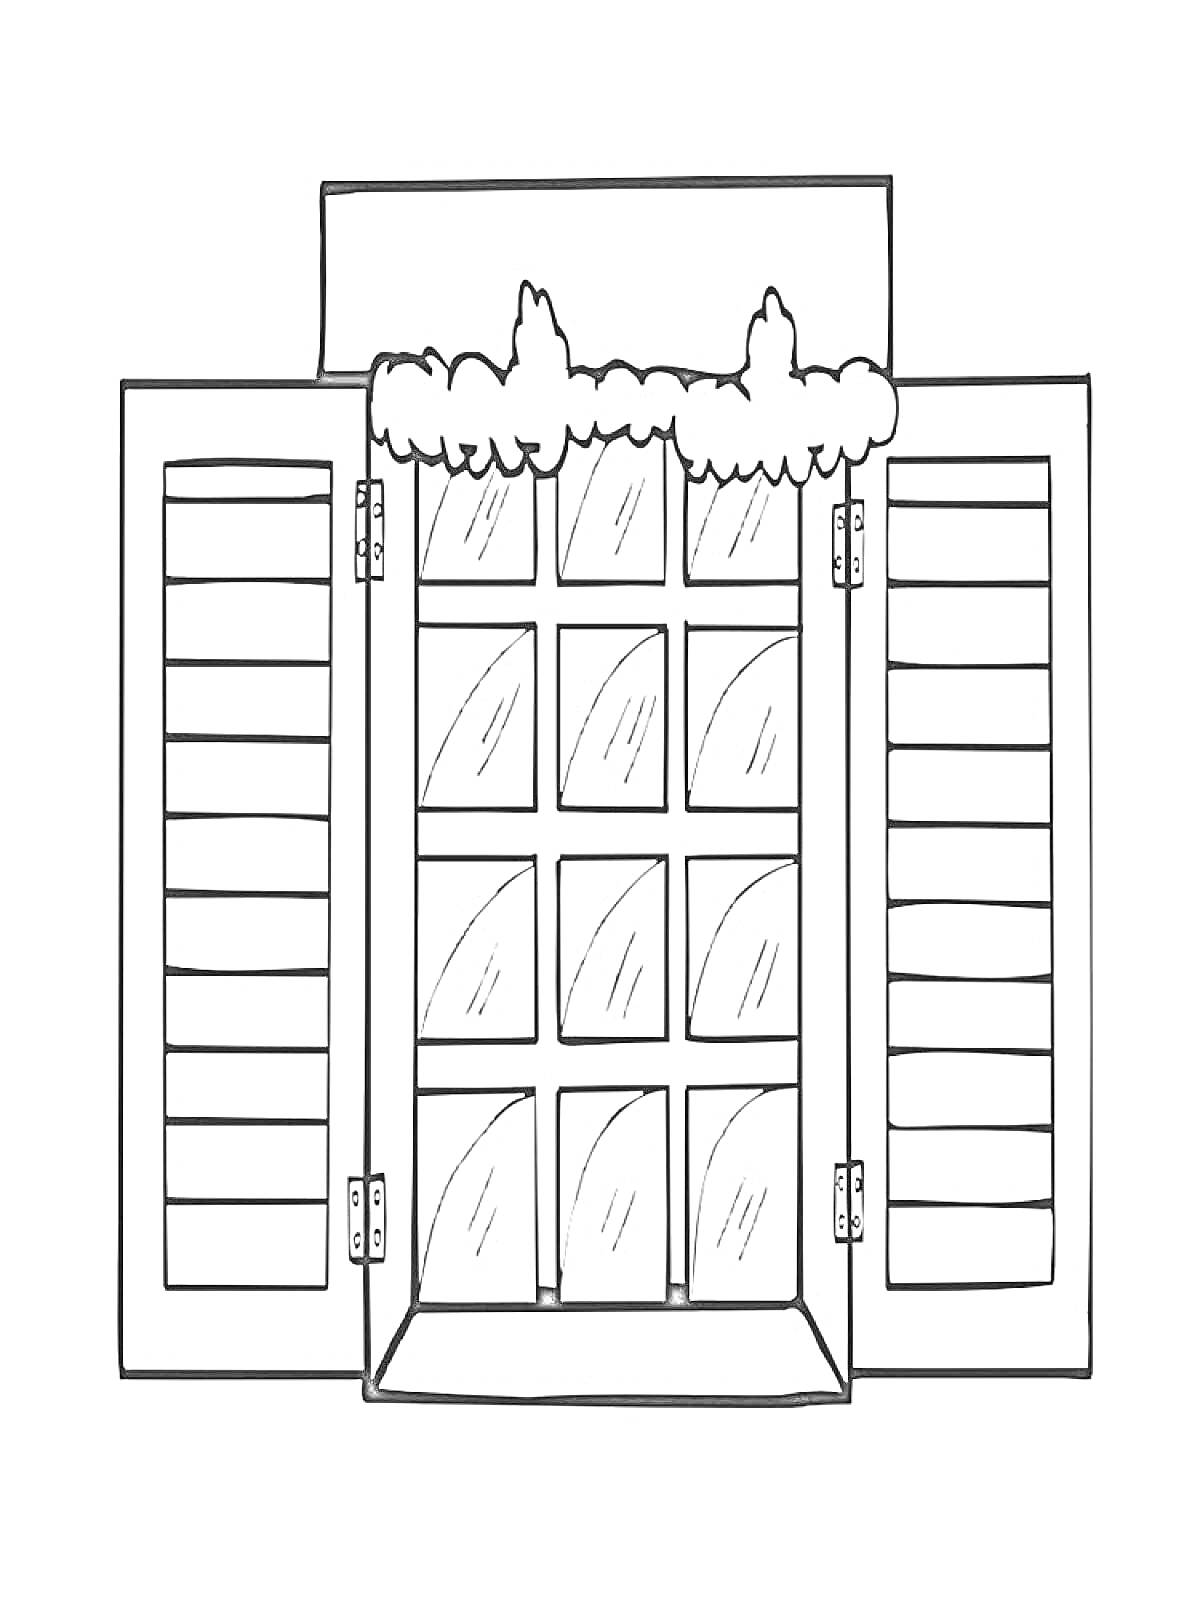 Дверь с жалюзи и декоративным элементом в виде кустов